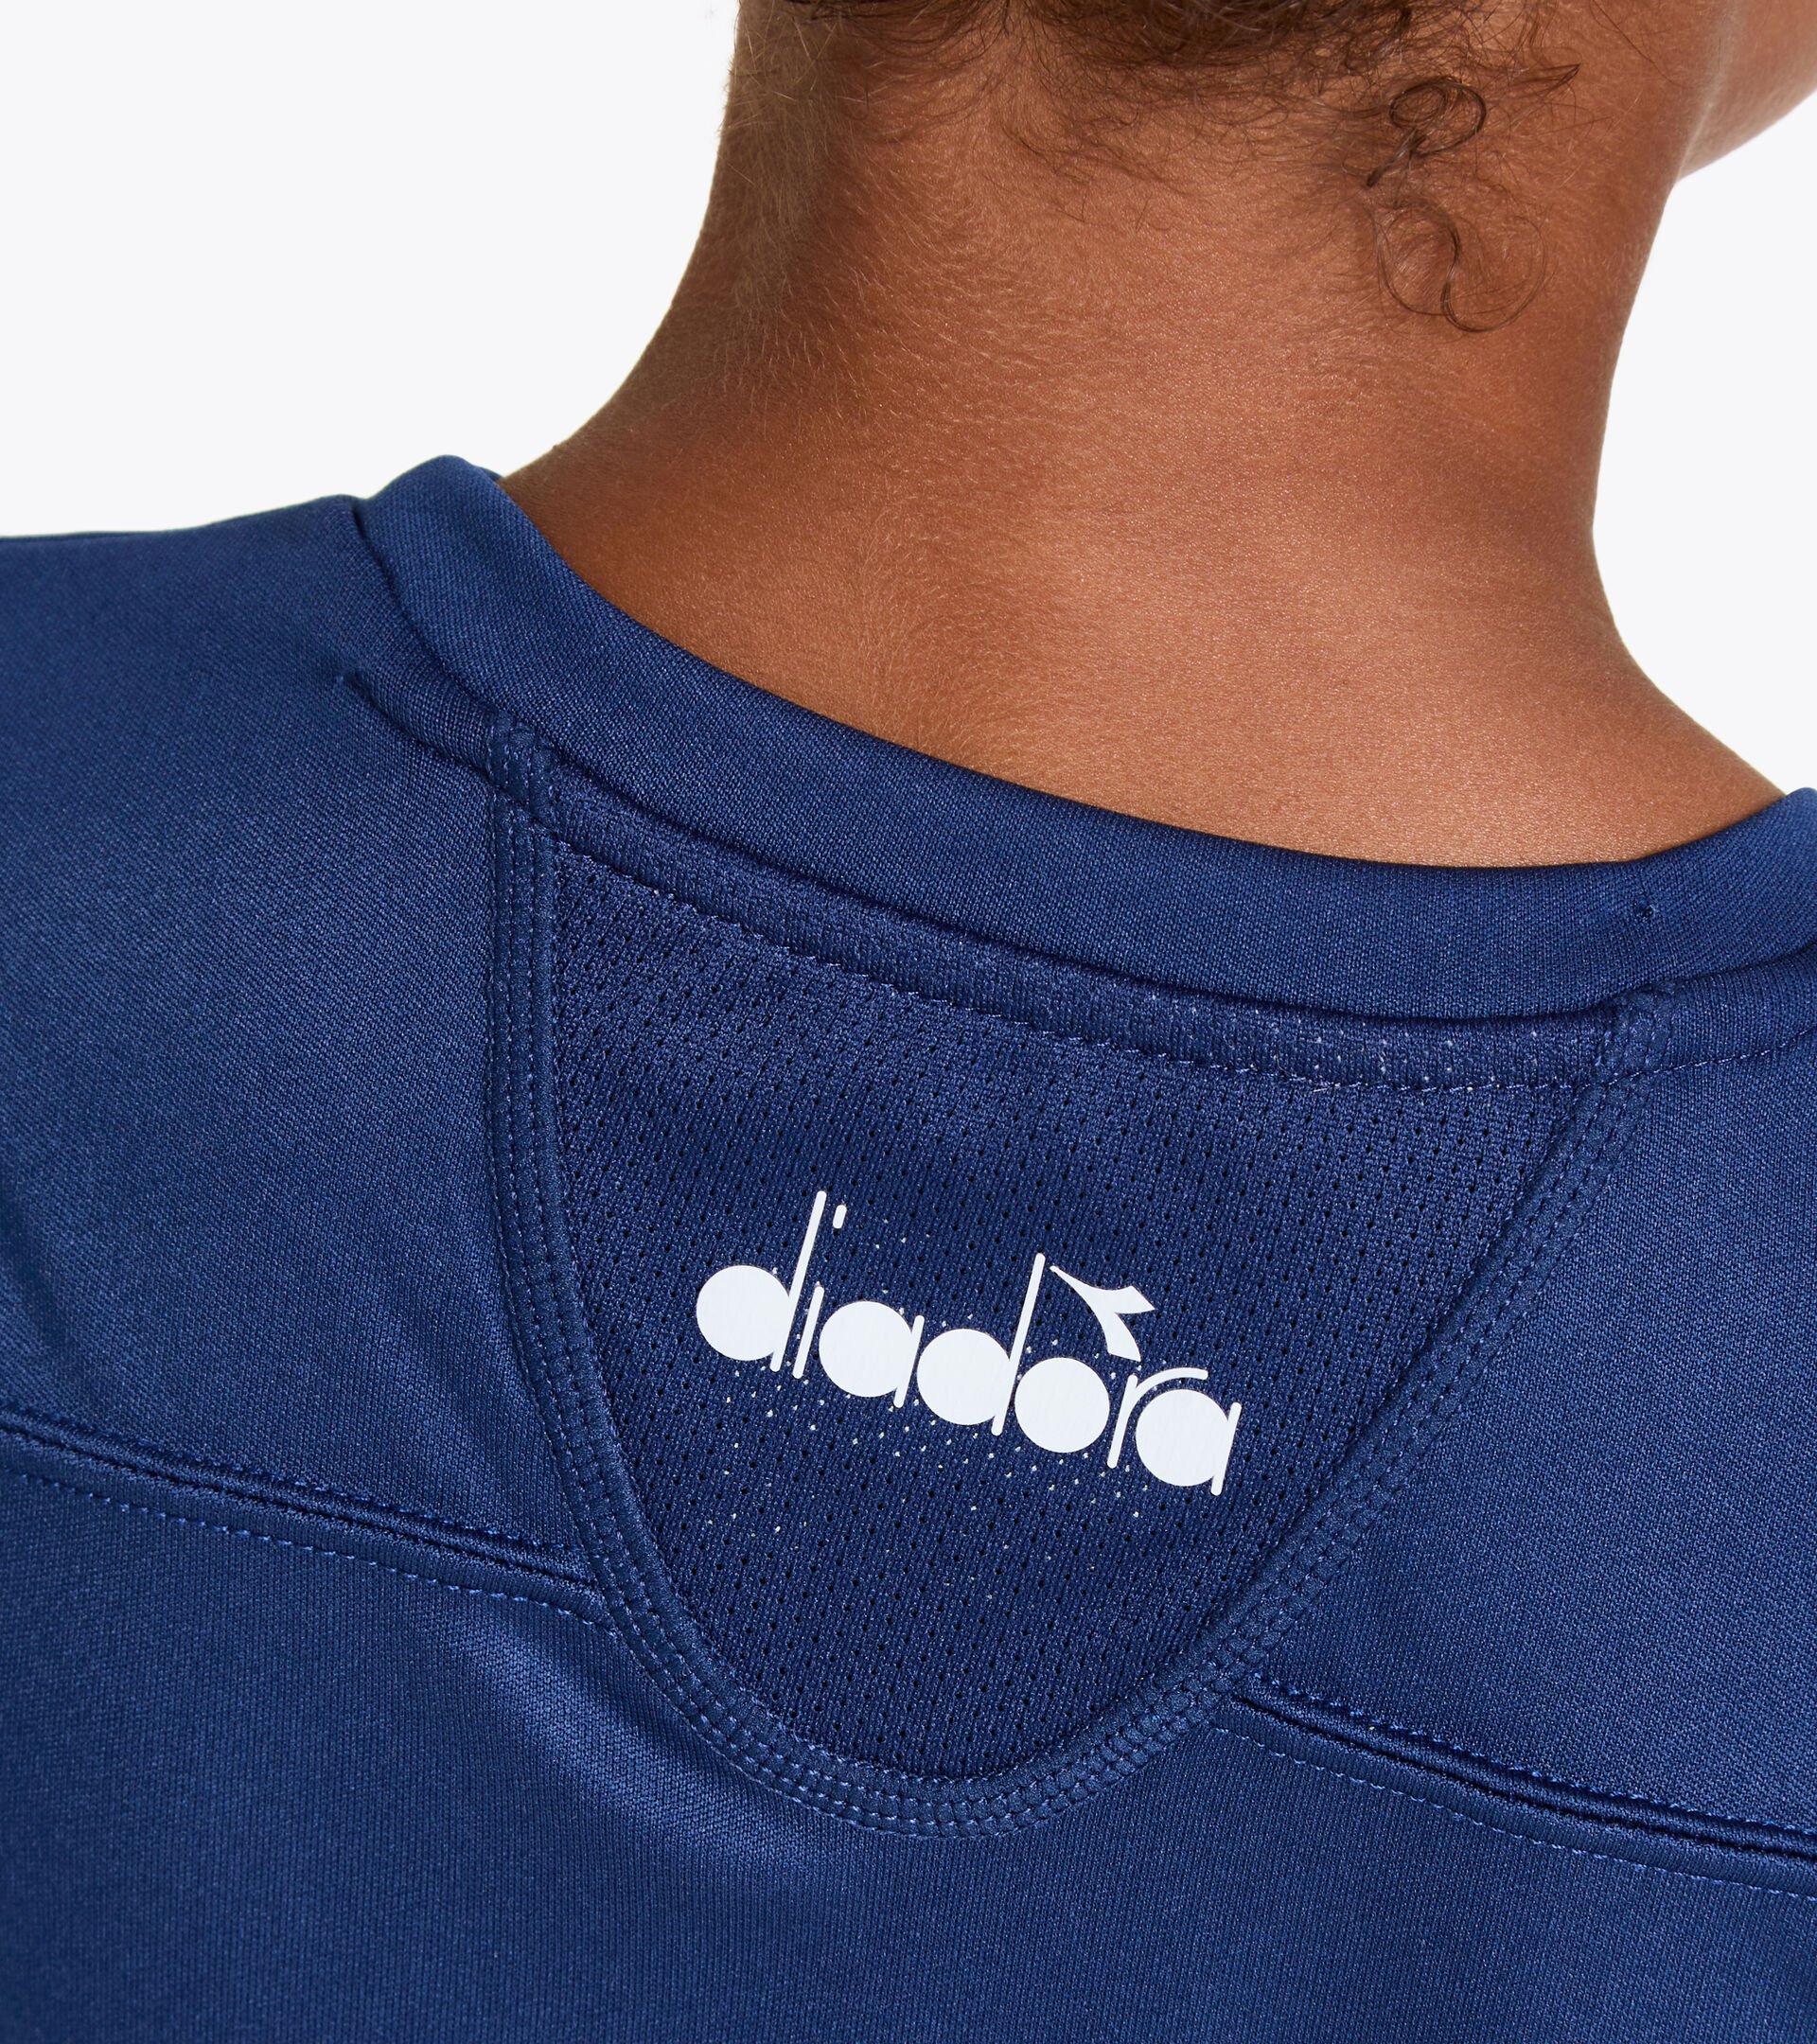 Tennis T-shirt - Junior G. T-SHIRT TEAM SALTIRE NAVY - Diadora